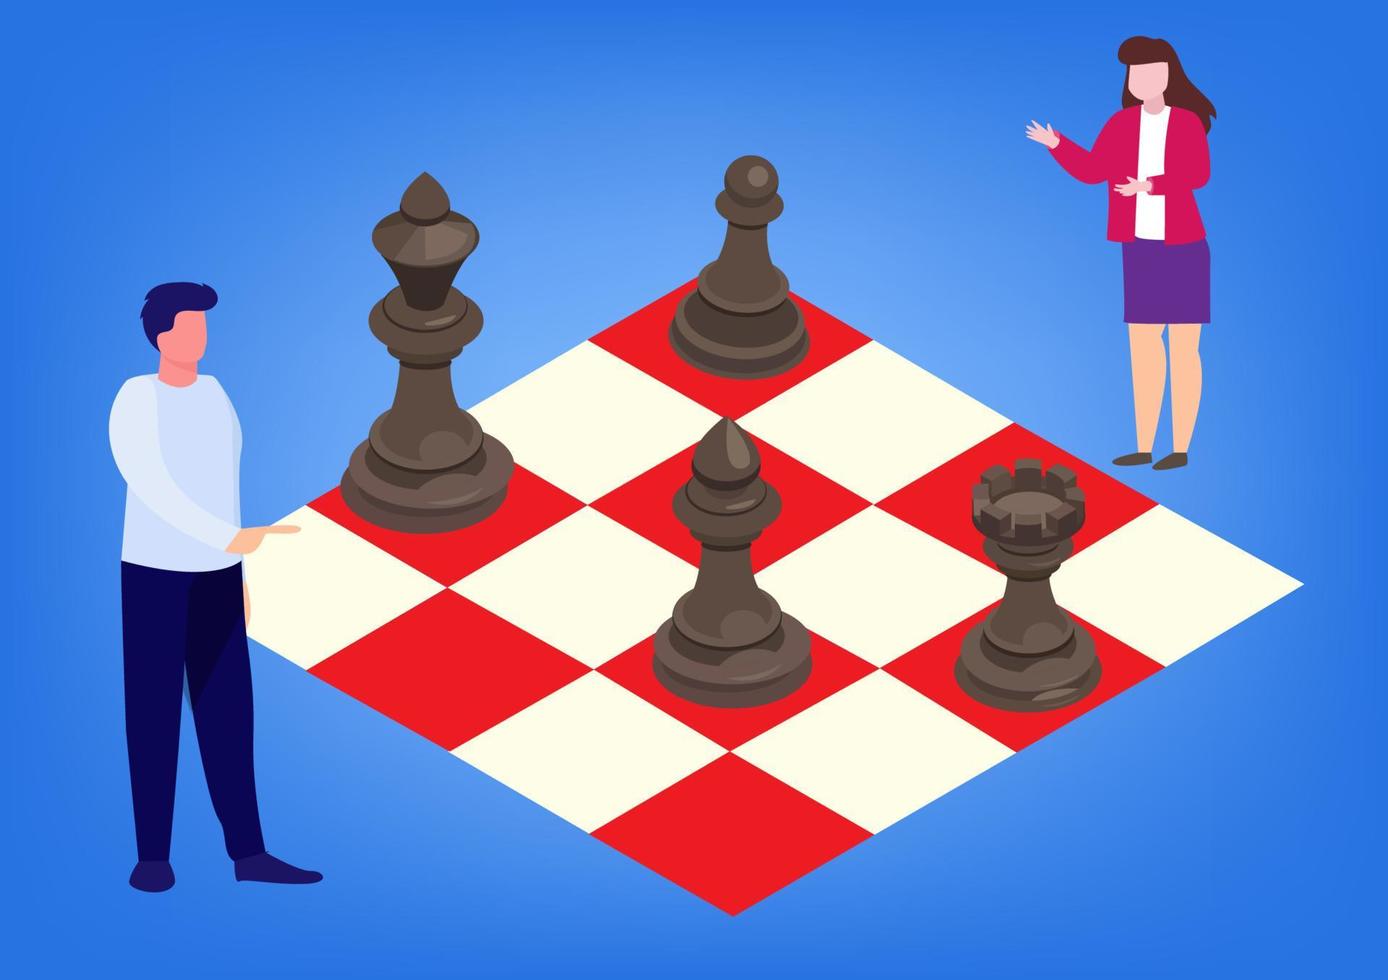 marknadsföringsanalys planering karaktär kontroller att spela schack. vektor illustration